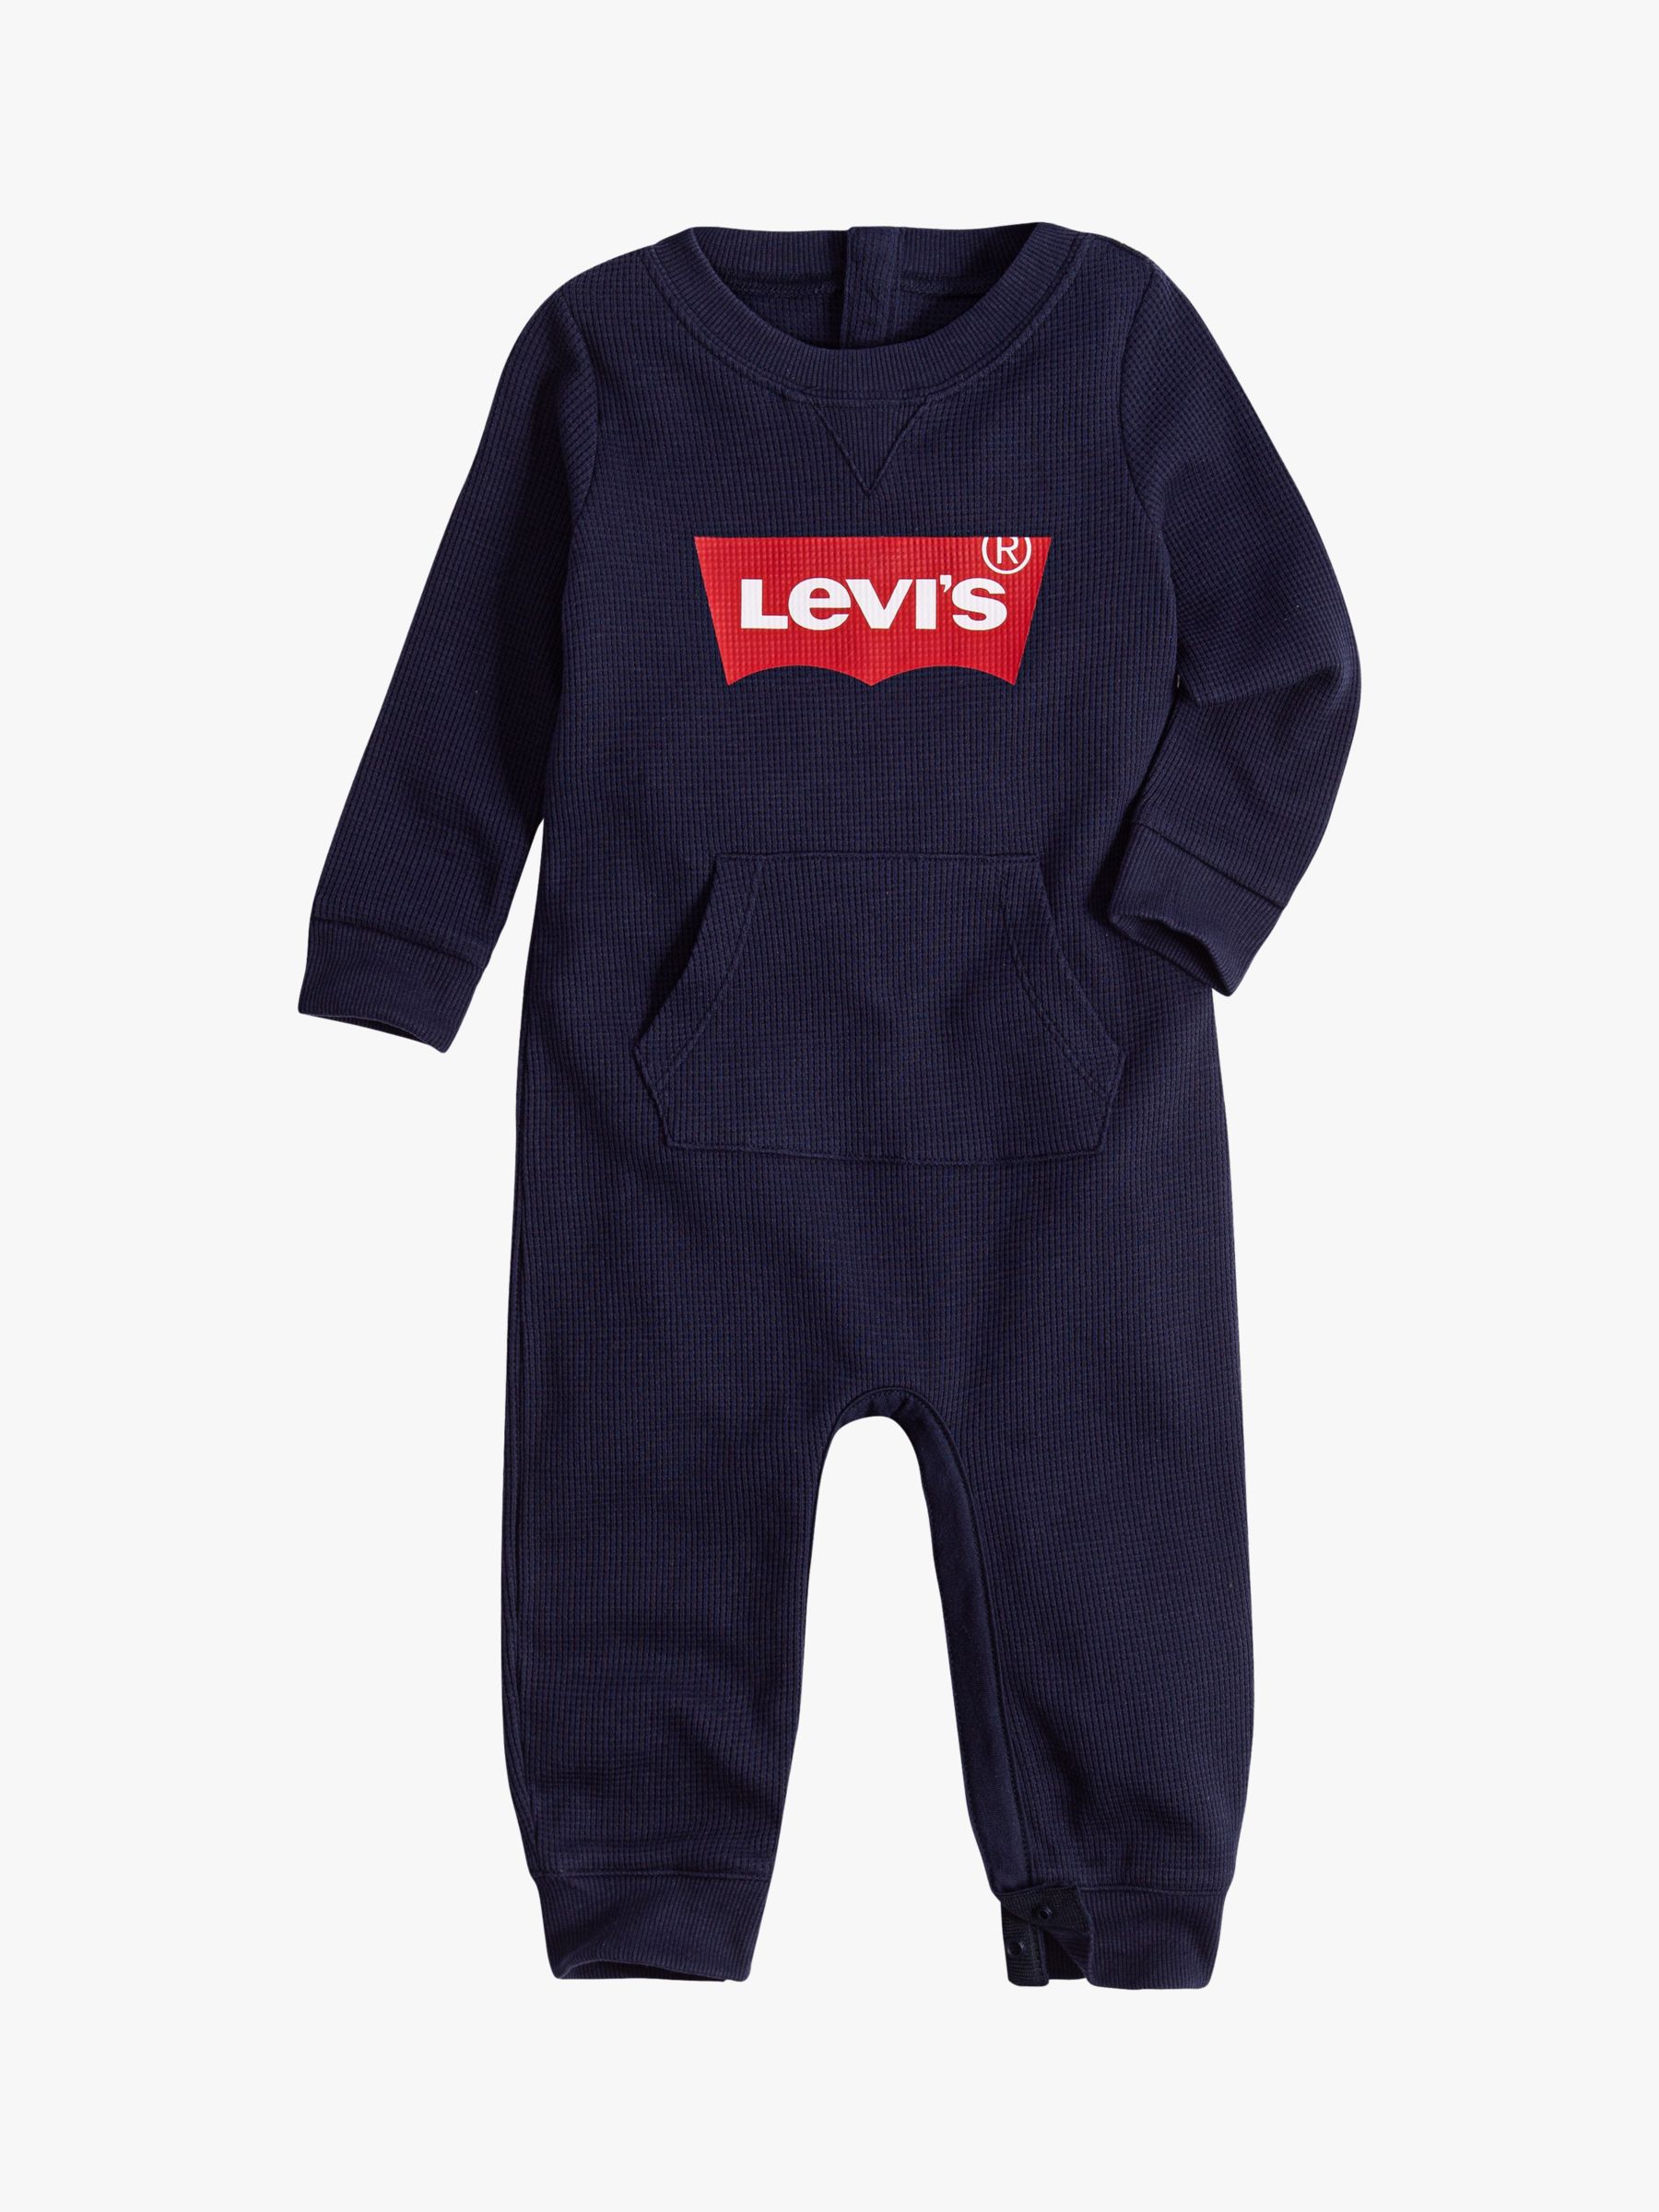 levi's baby onesie